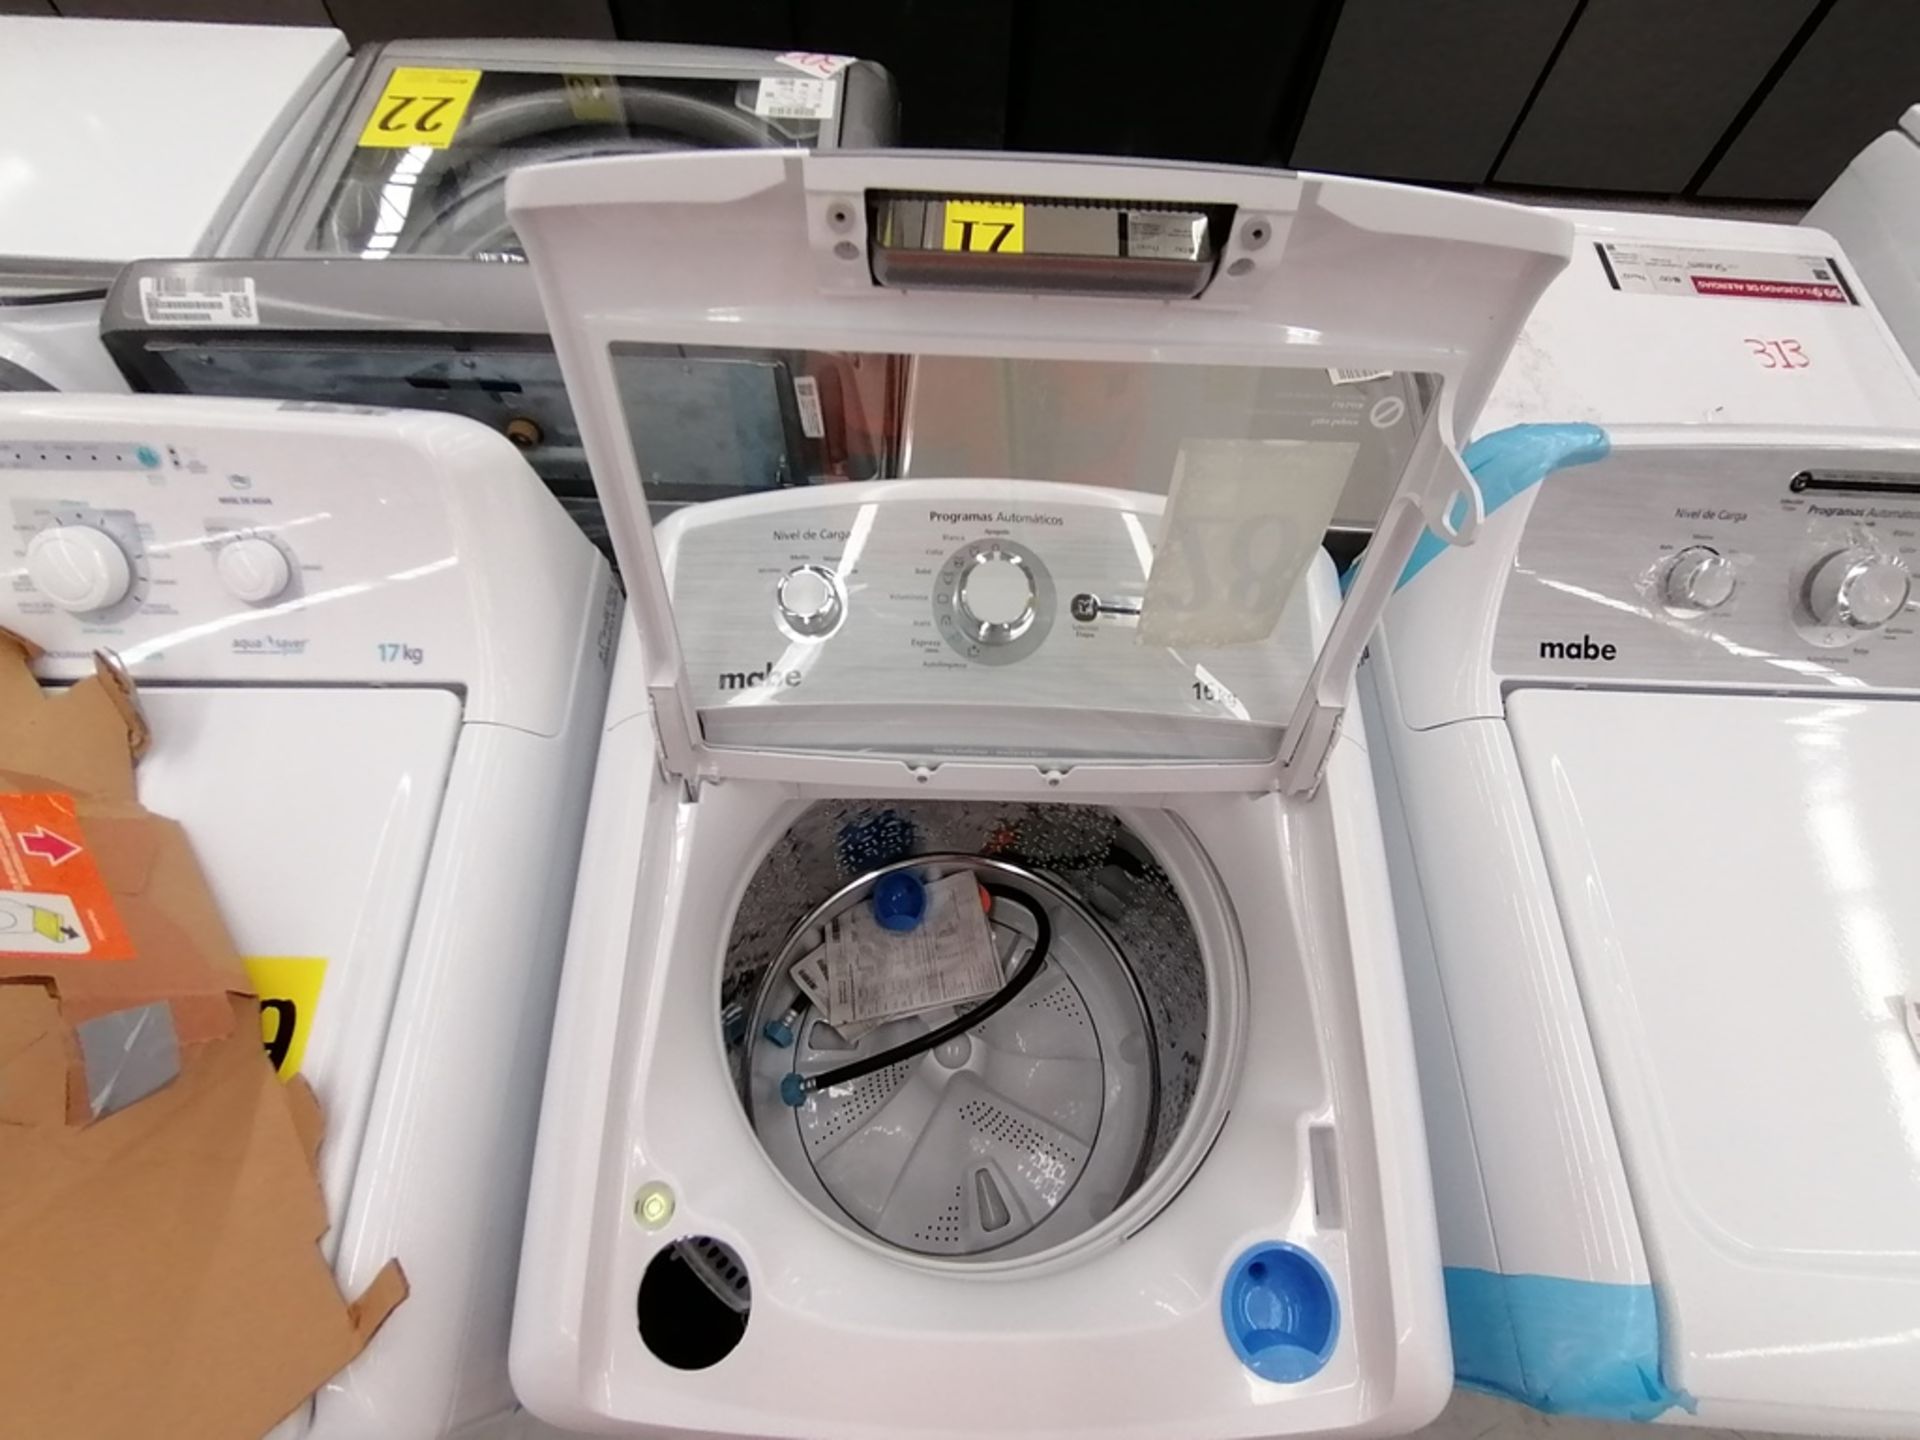 Lote de 3 lavadoras contiene: 1 Lavadora de 16KG, Marca Mabe, Modelo LMA46102VBAB02, Serie 2108S802 - Image 28 of 29